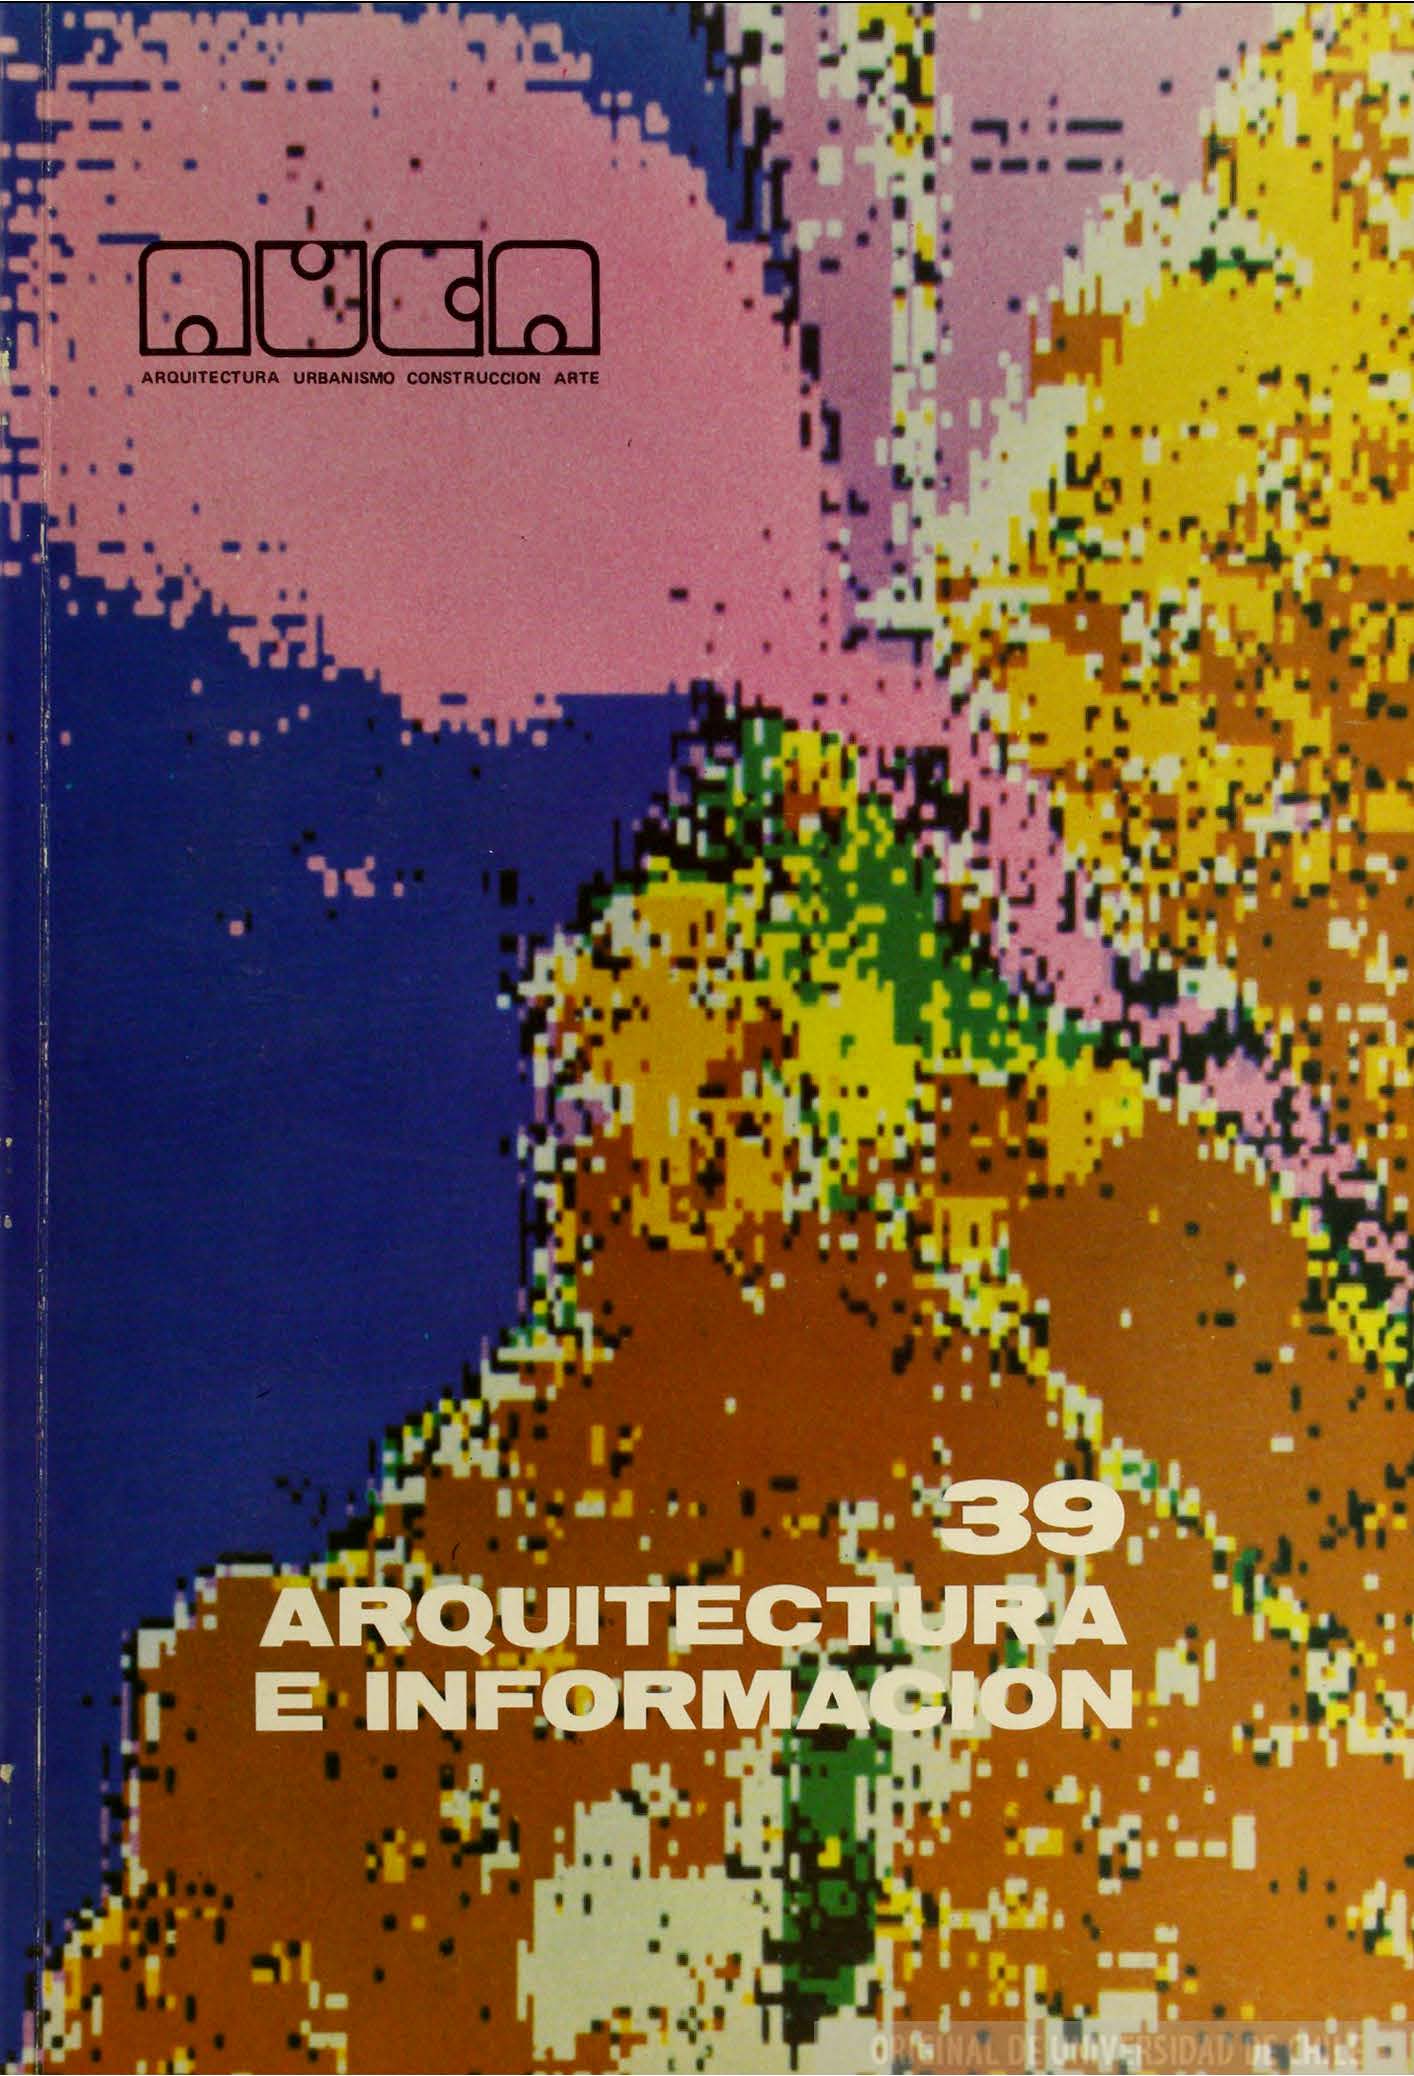 											Ver Núm. 39 (1980): Arquitectura e Información
										